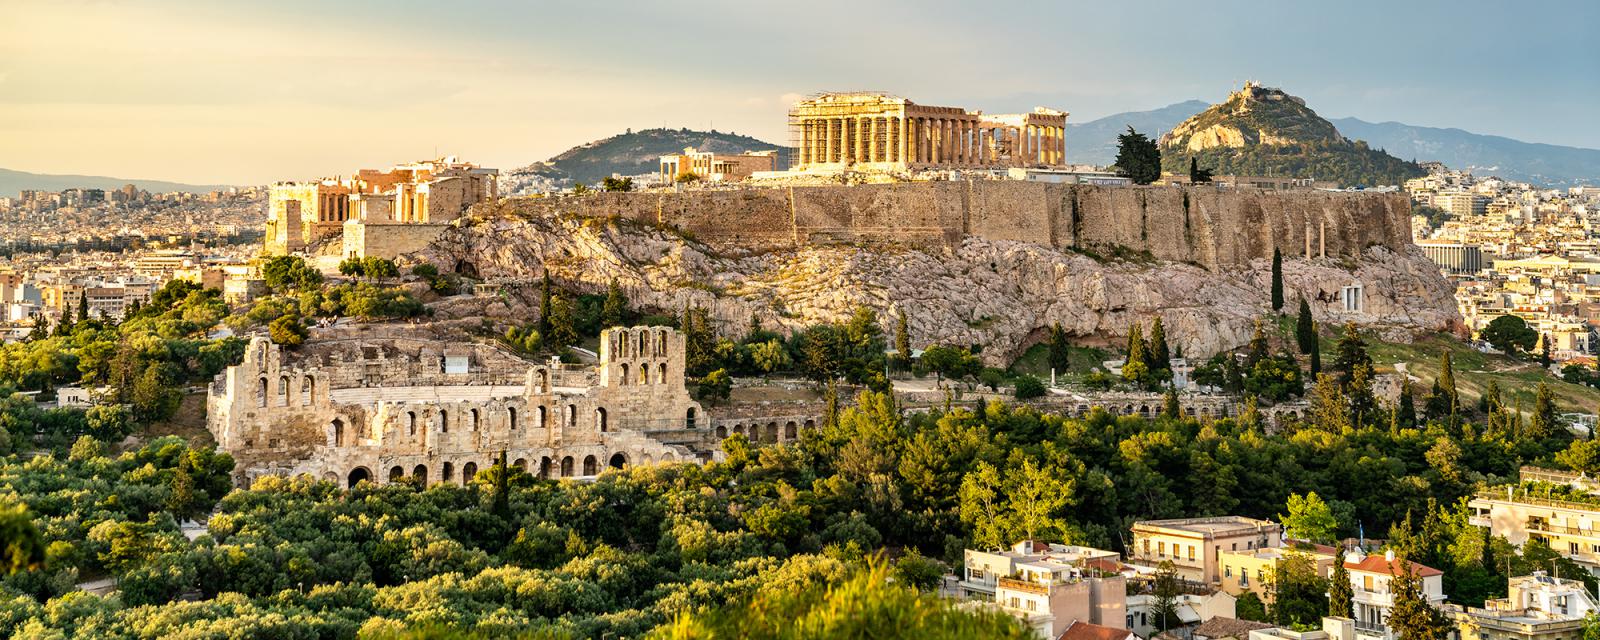 Leuke en handige tips voor een toekomstige stedentrip Athene 